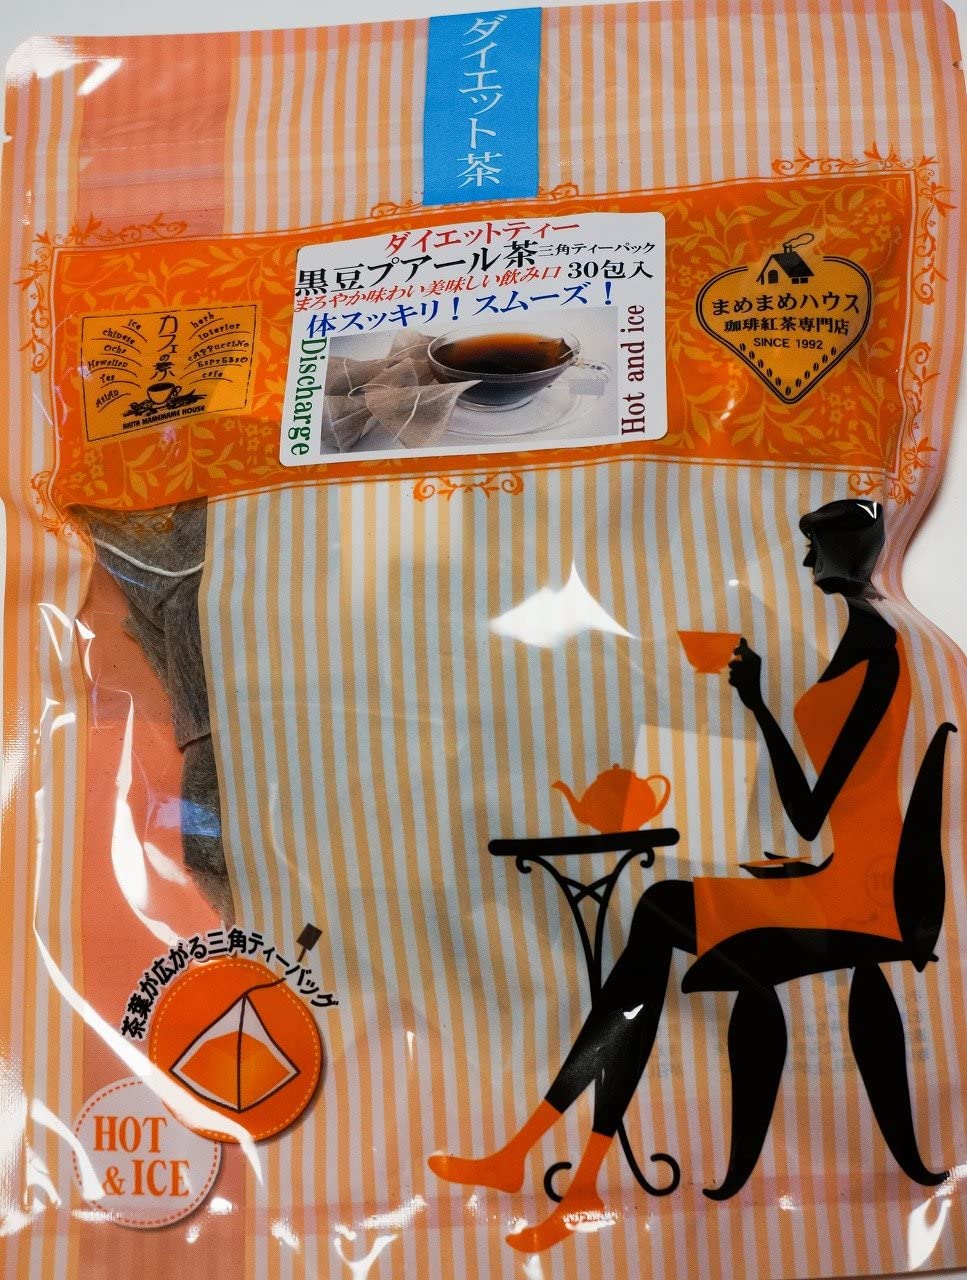 黒豆プーアル茶 三角ティーパック[30包] 【送料無料】 ダイエットティー 黒豆茶 プーアル茶 黒豆 お茶 ティーパック